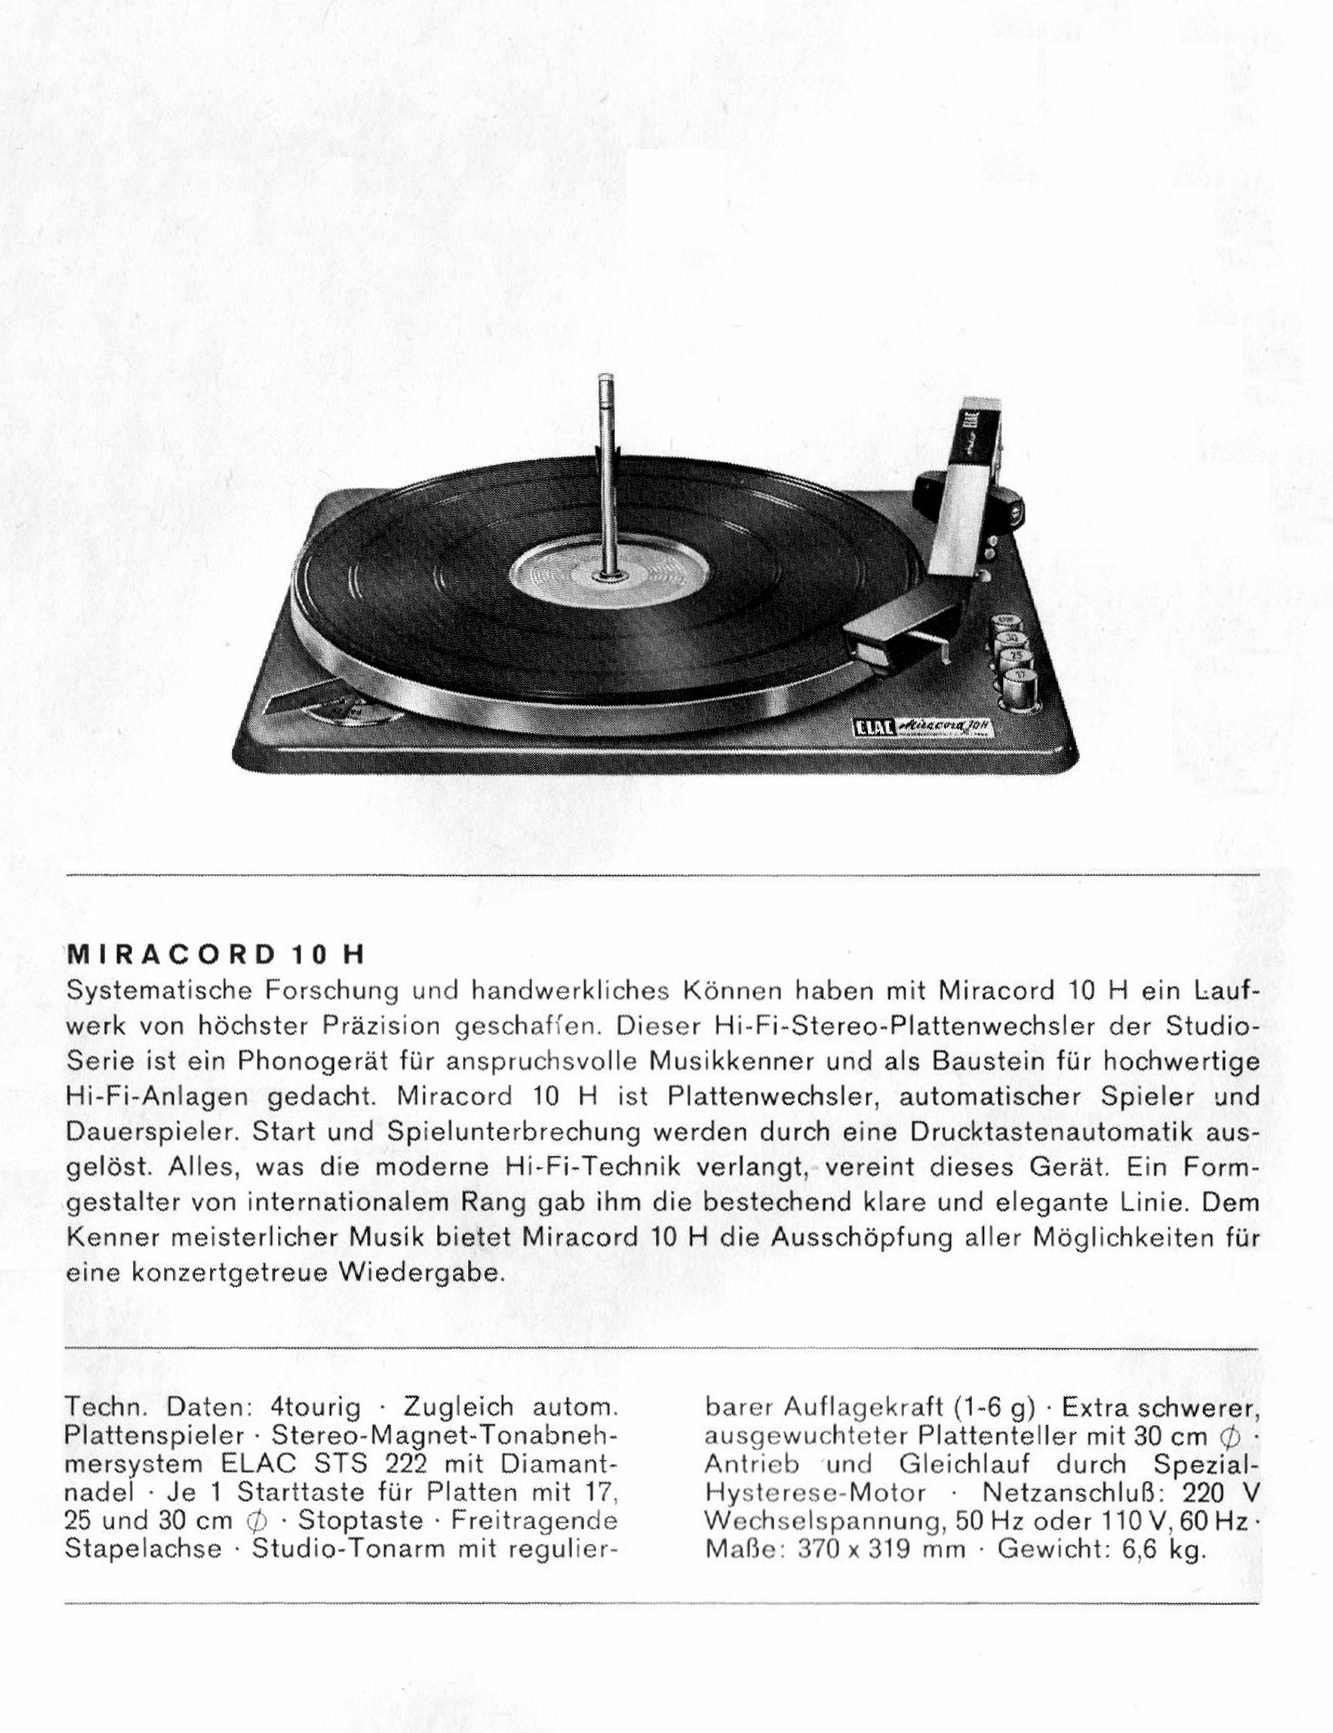 Elac Miraphon 18 H Daten-1965.jpg